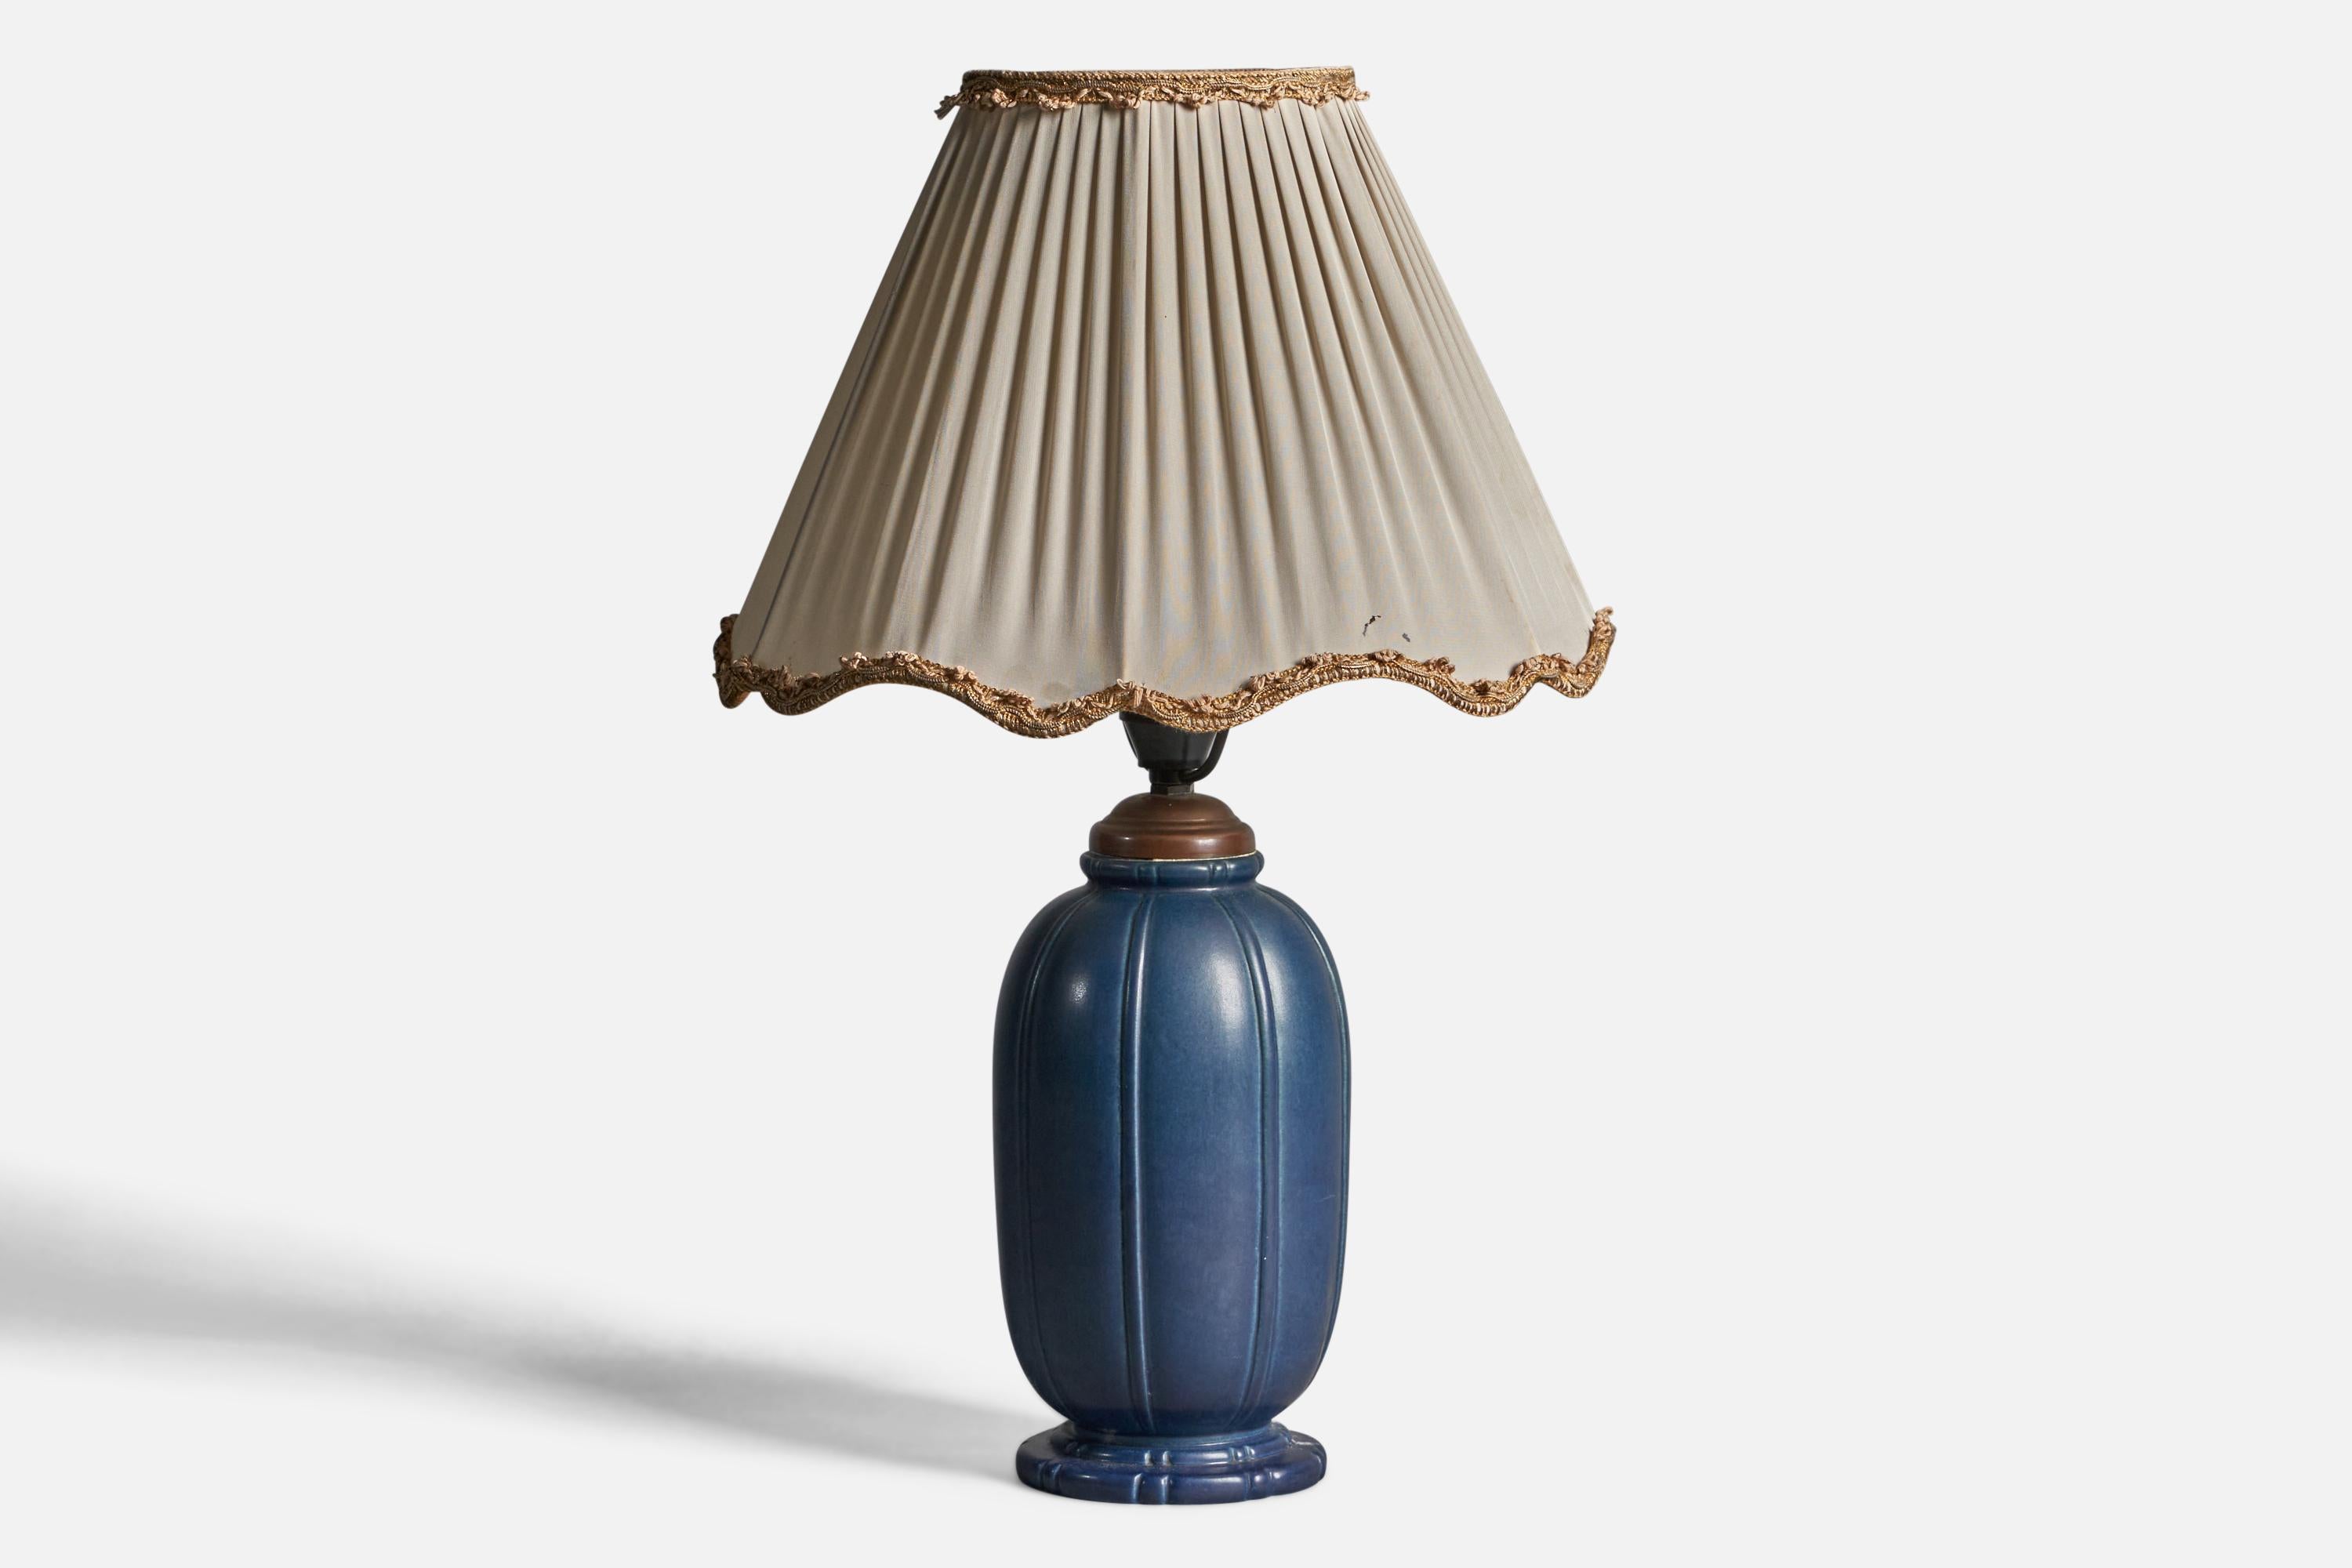 Lampe de table en grès émaillé bleu, laiton et tissu beige, conçue et produite par Peter Ipsen Enke, Danemark, années 1940.

Dimensions globales (pouces) : 19